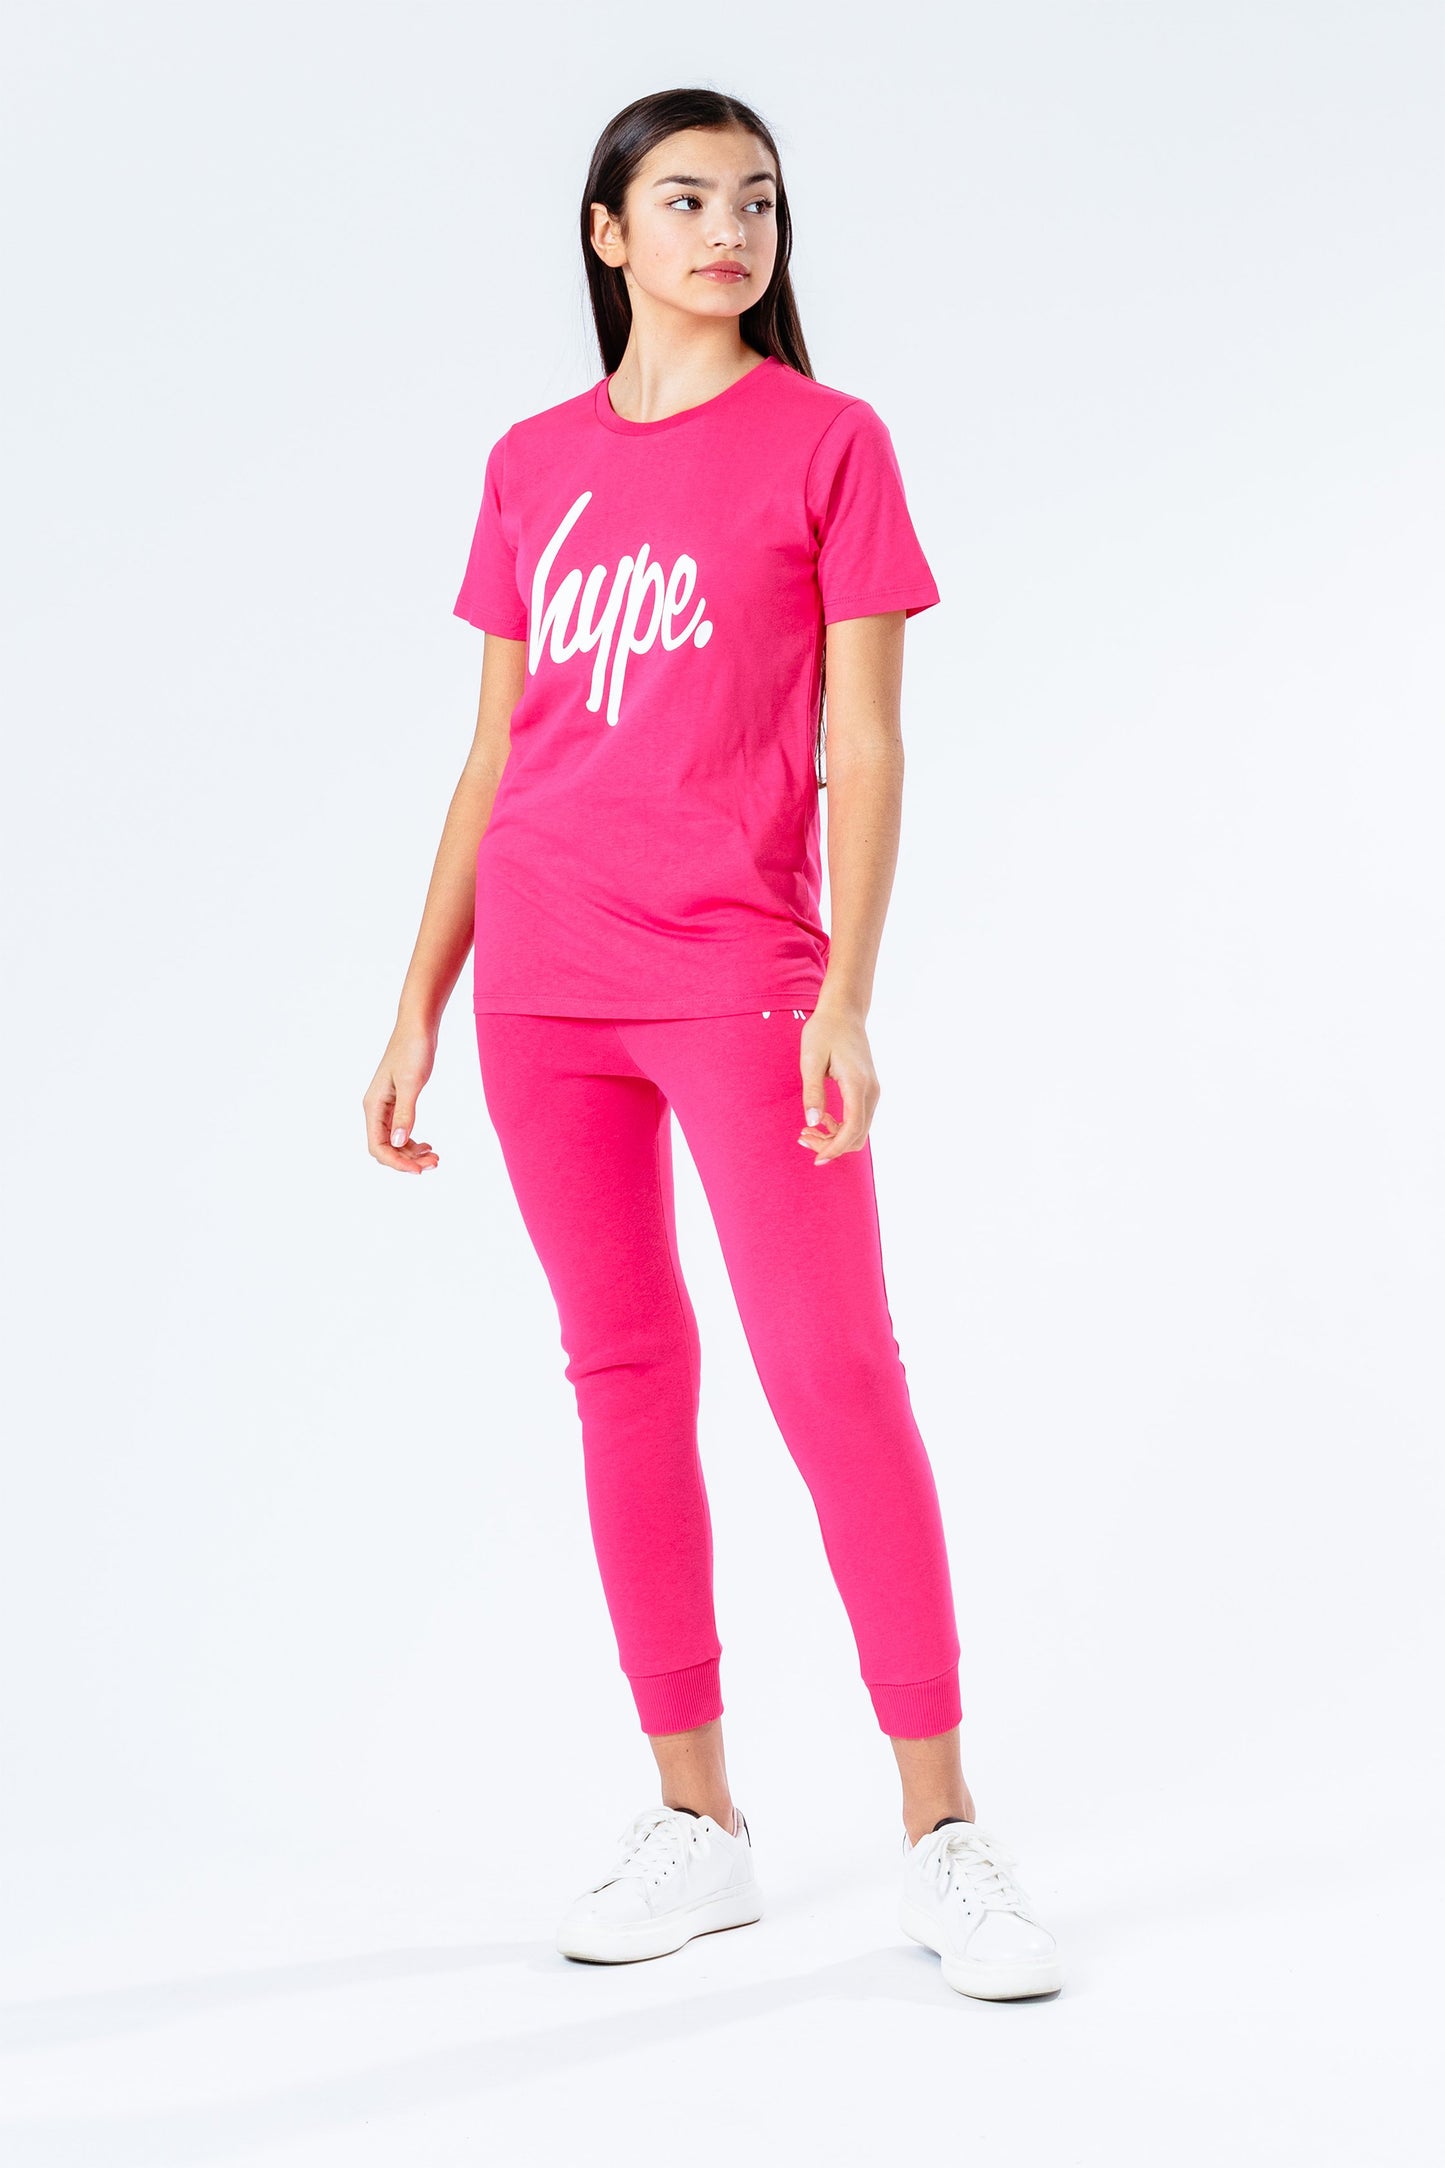 Hype Power Pink Script Kids T-Shirt